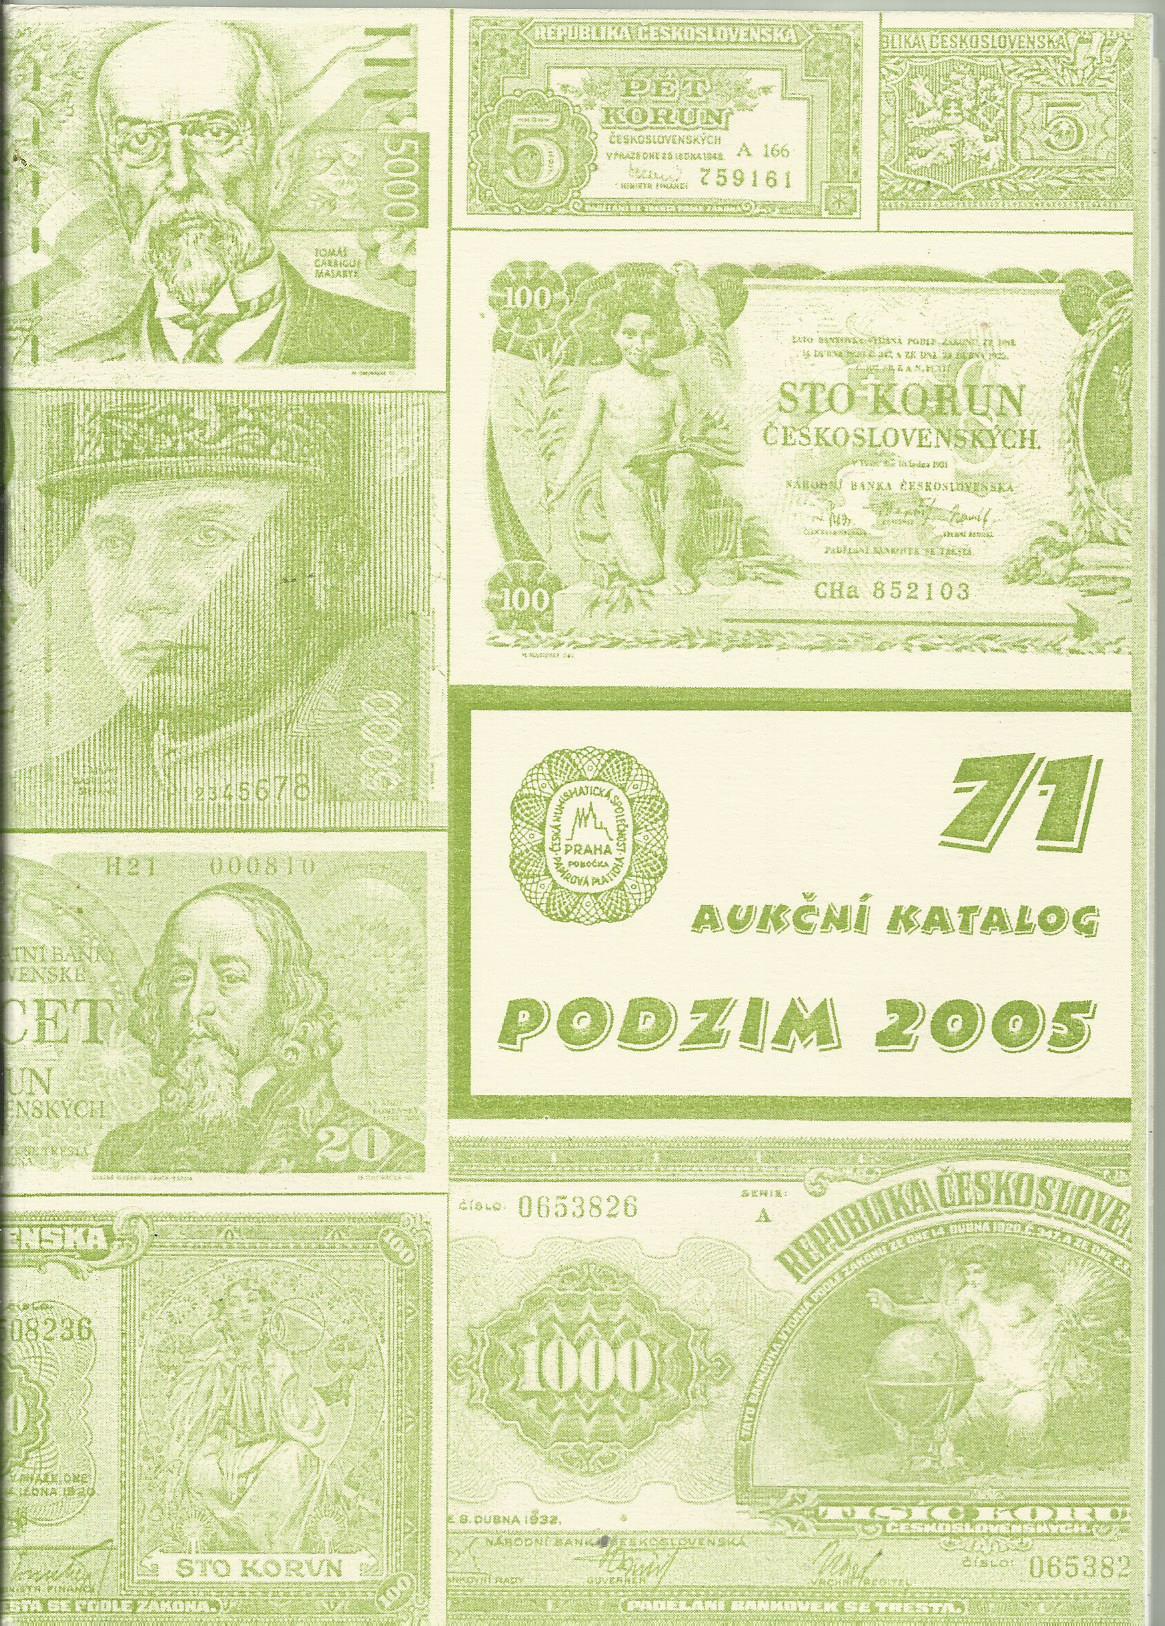 Aukční katalog podzim 2005